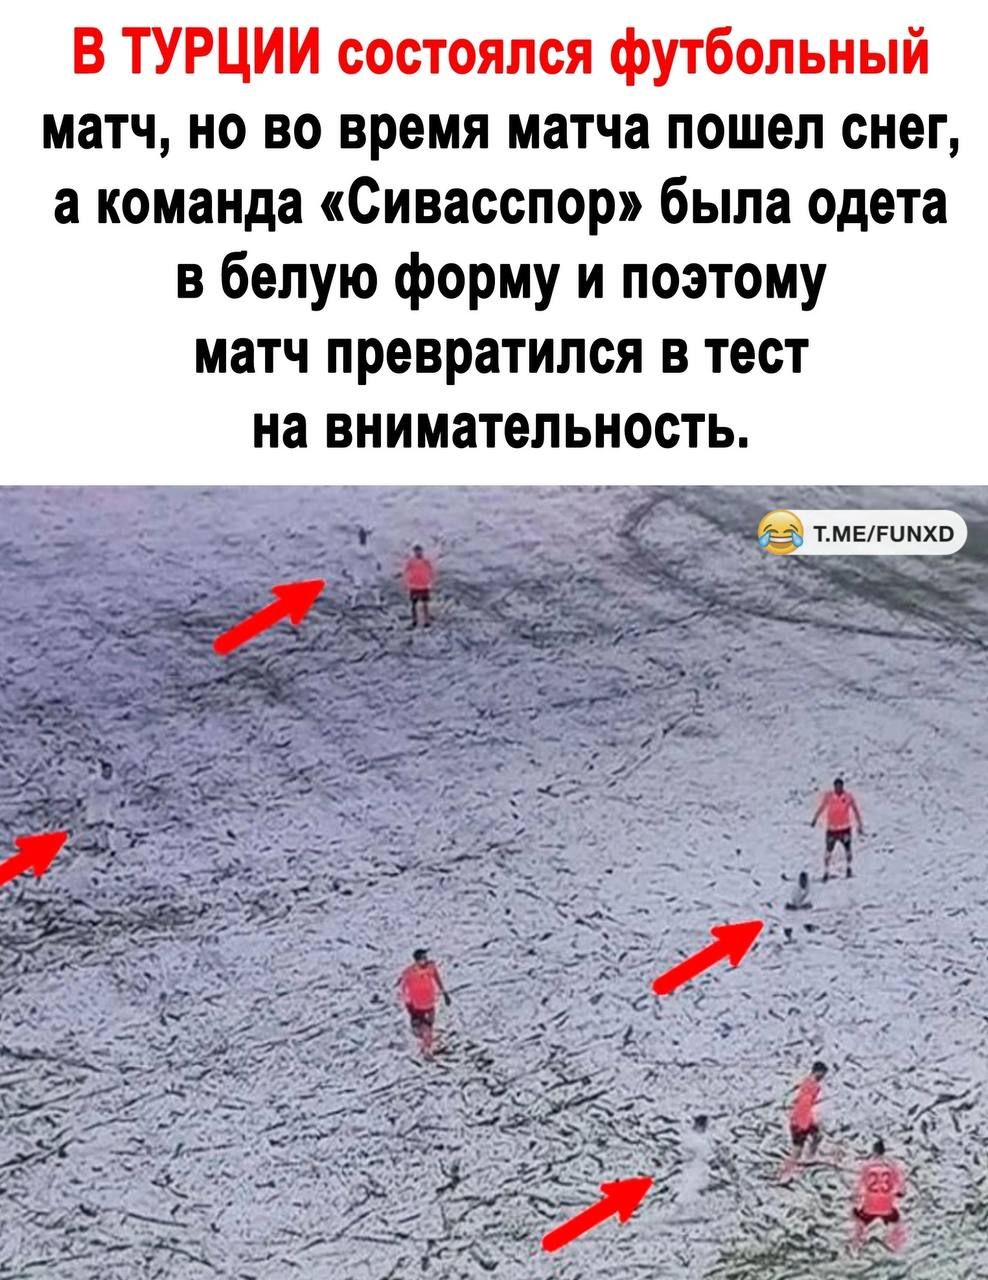 В ТУРЦИИ состоялся футбольный матч но во время матча пошел снег а команда Сивасспор была одета в белую форму и поэтому матч превратился в тест на внимательность